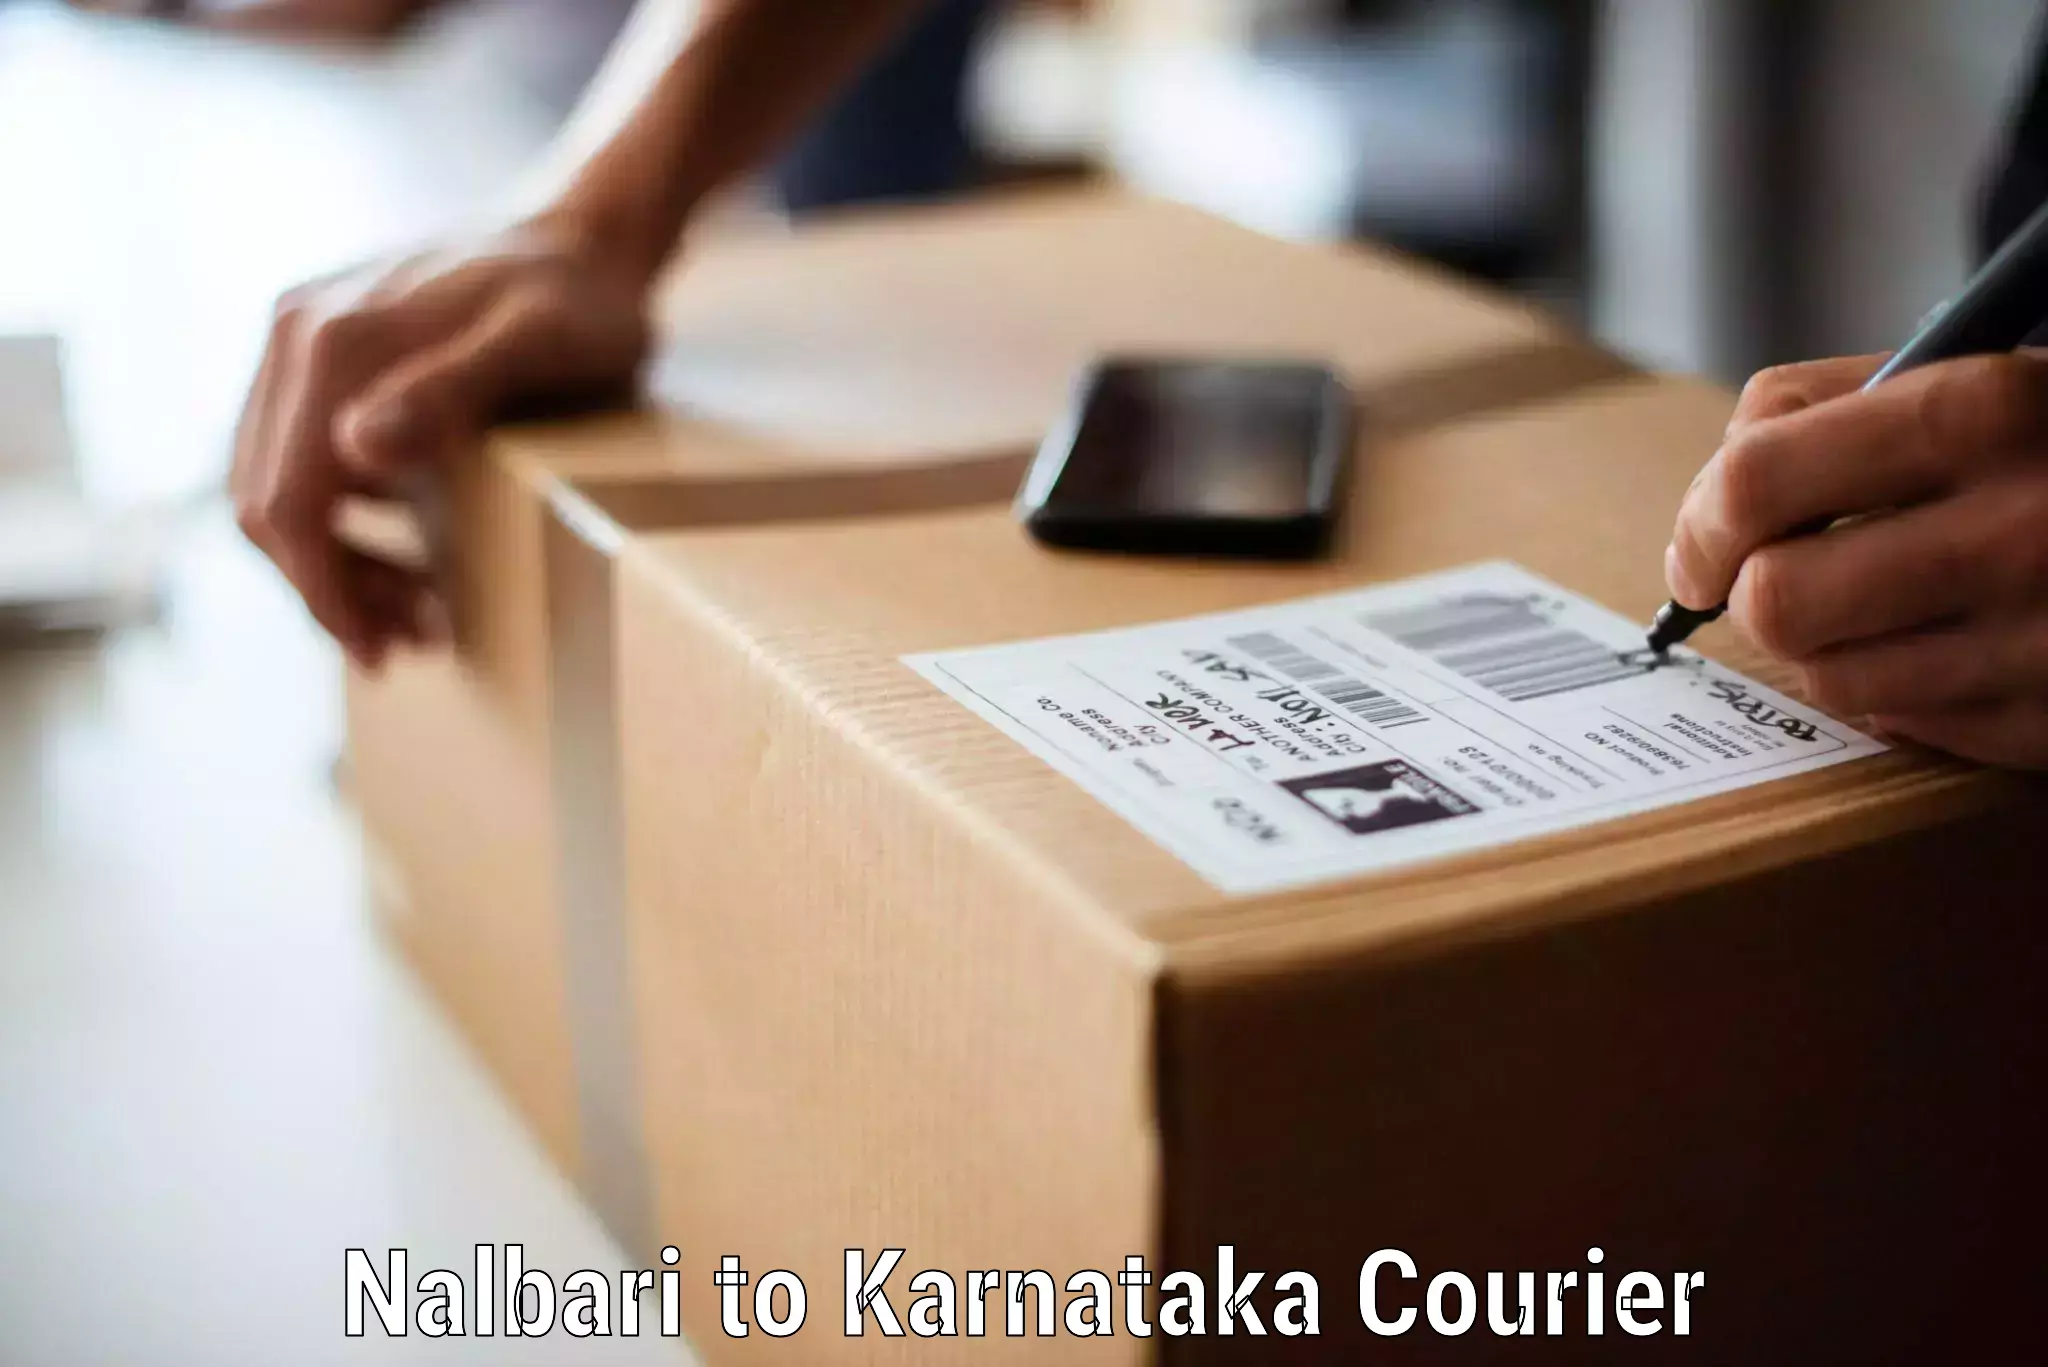 Moving and handling services Nalbari to Yenepoya Mangalore